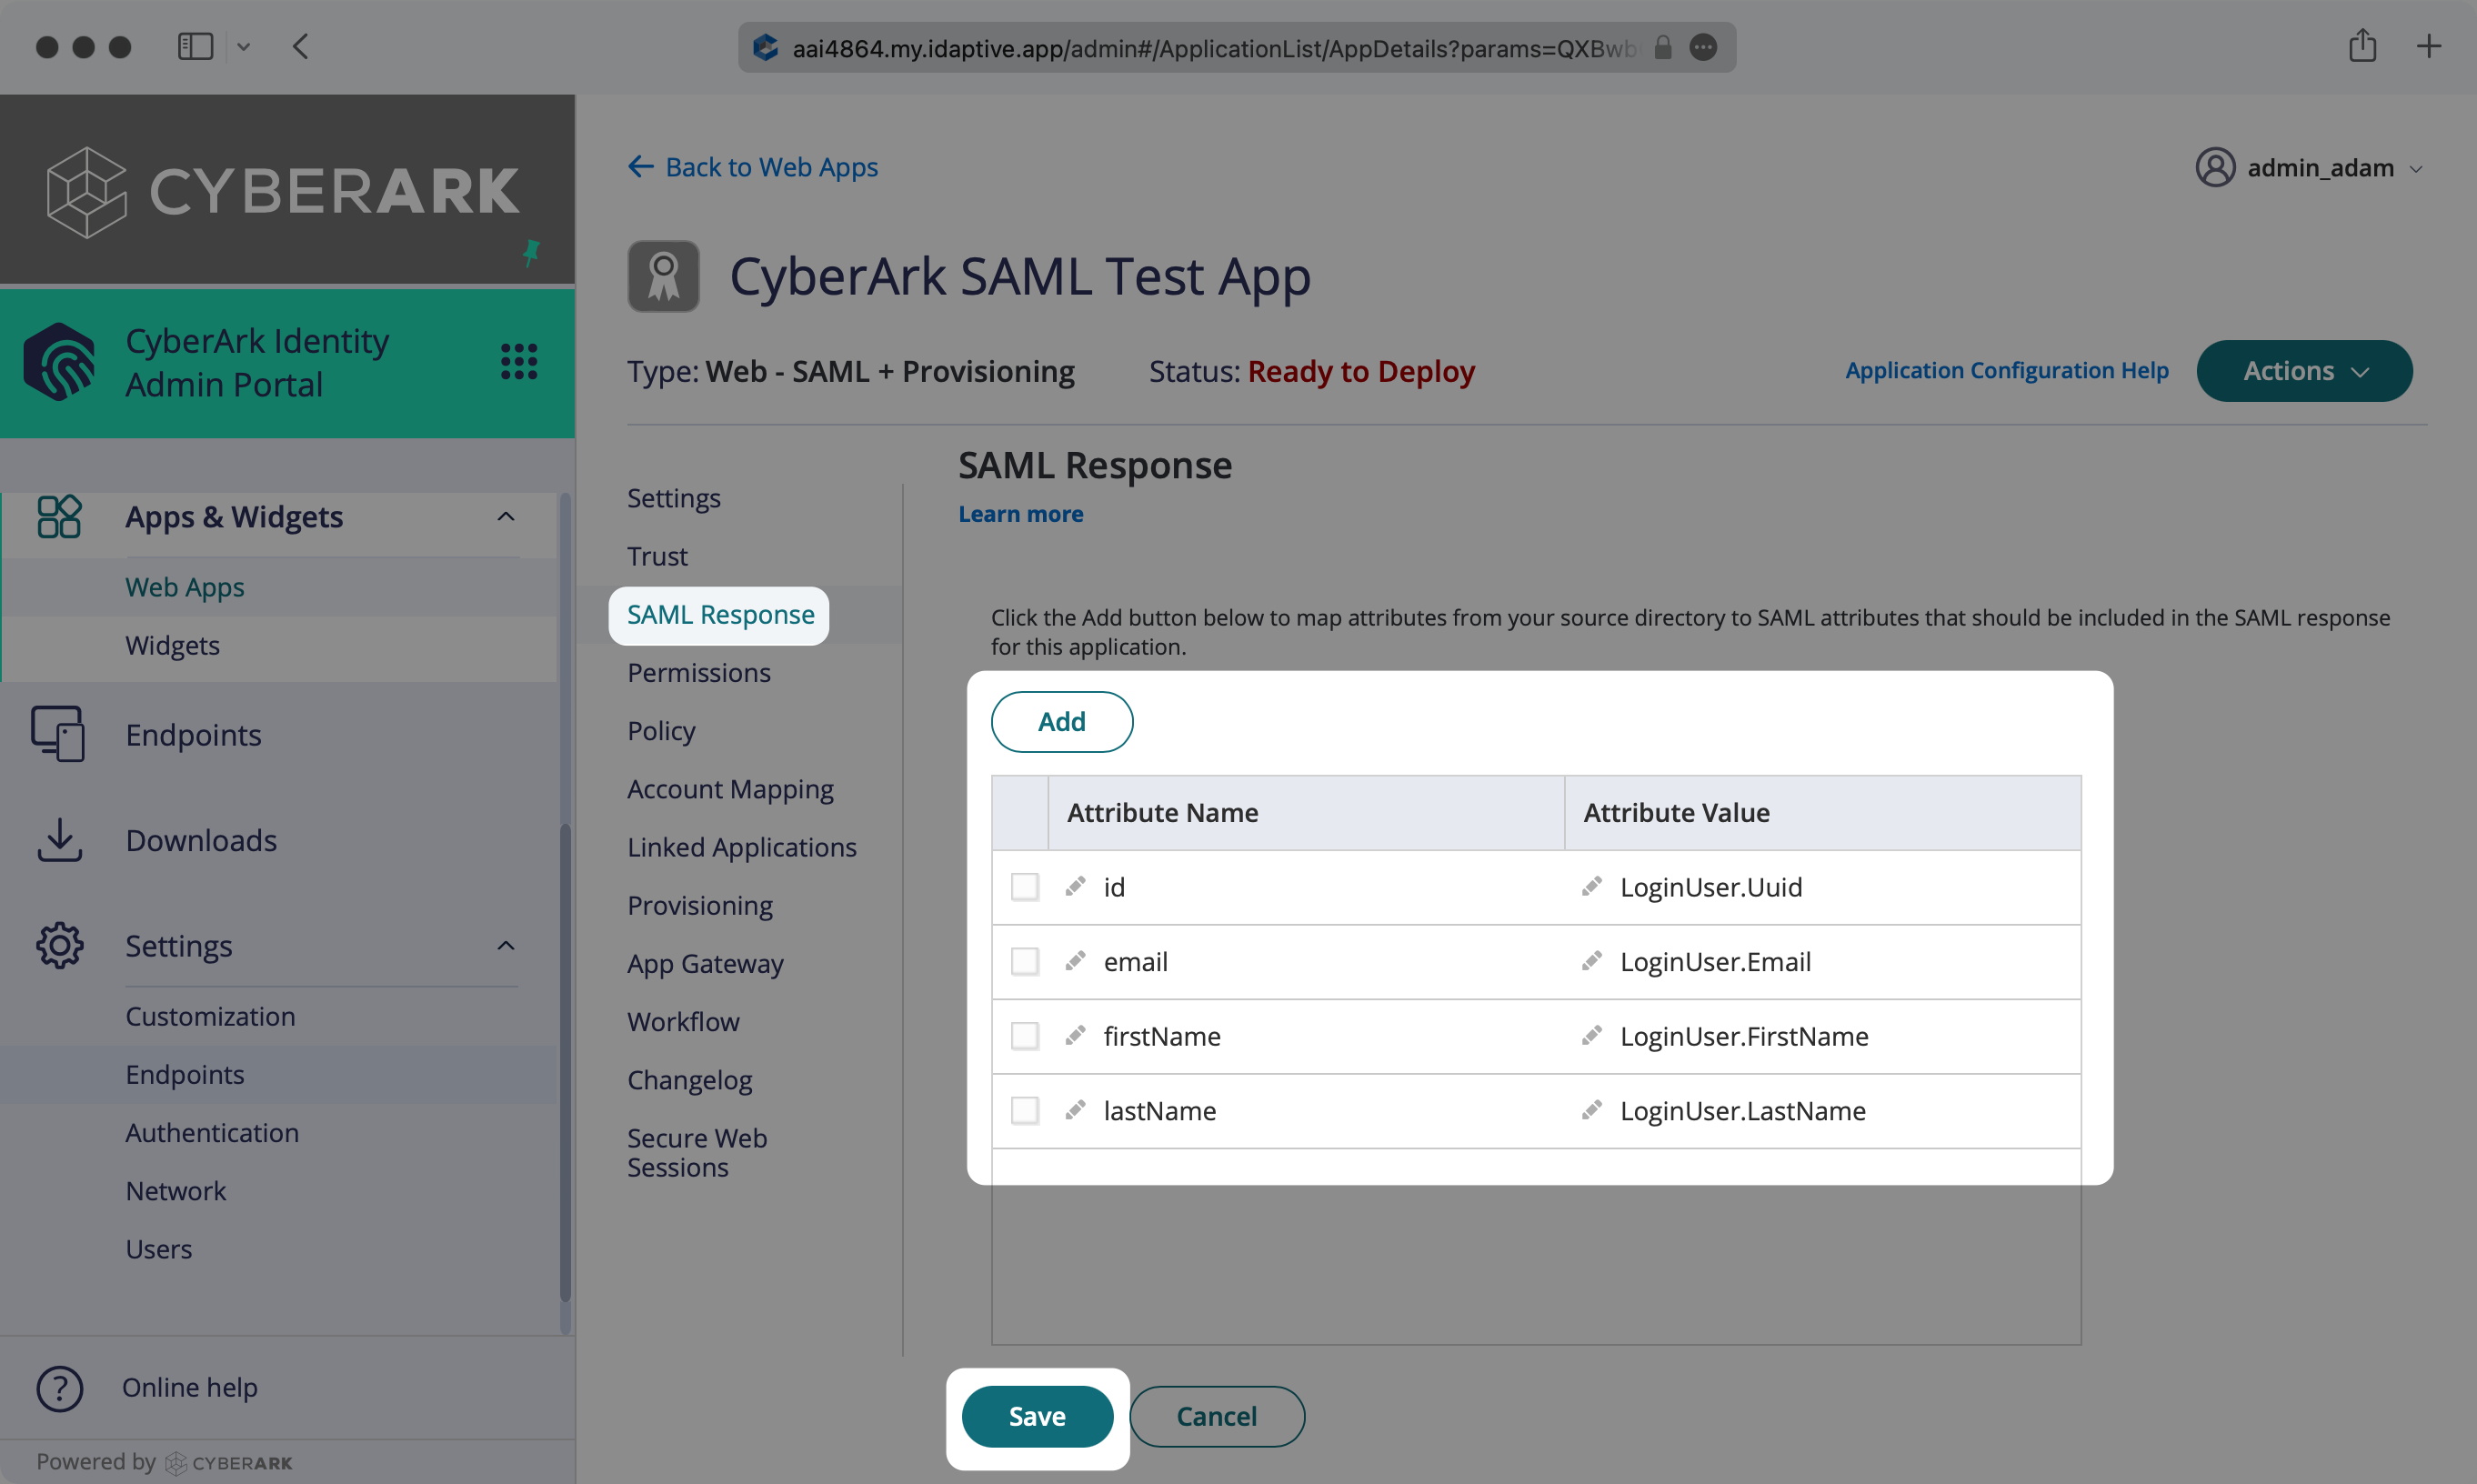 Configure SAML Attributes in CyberArk